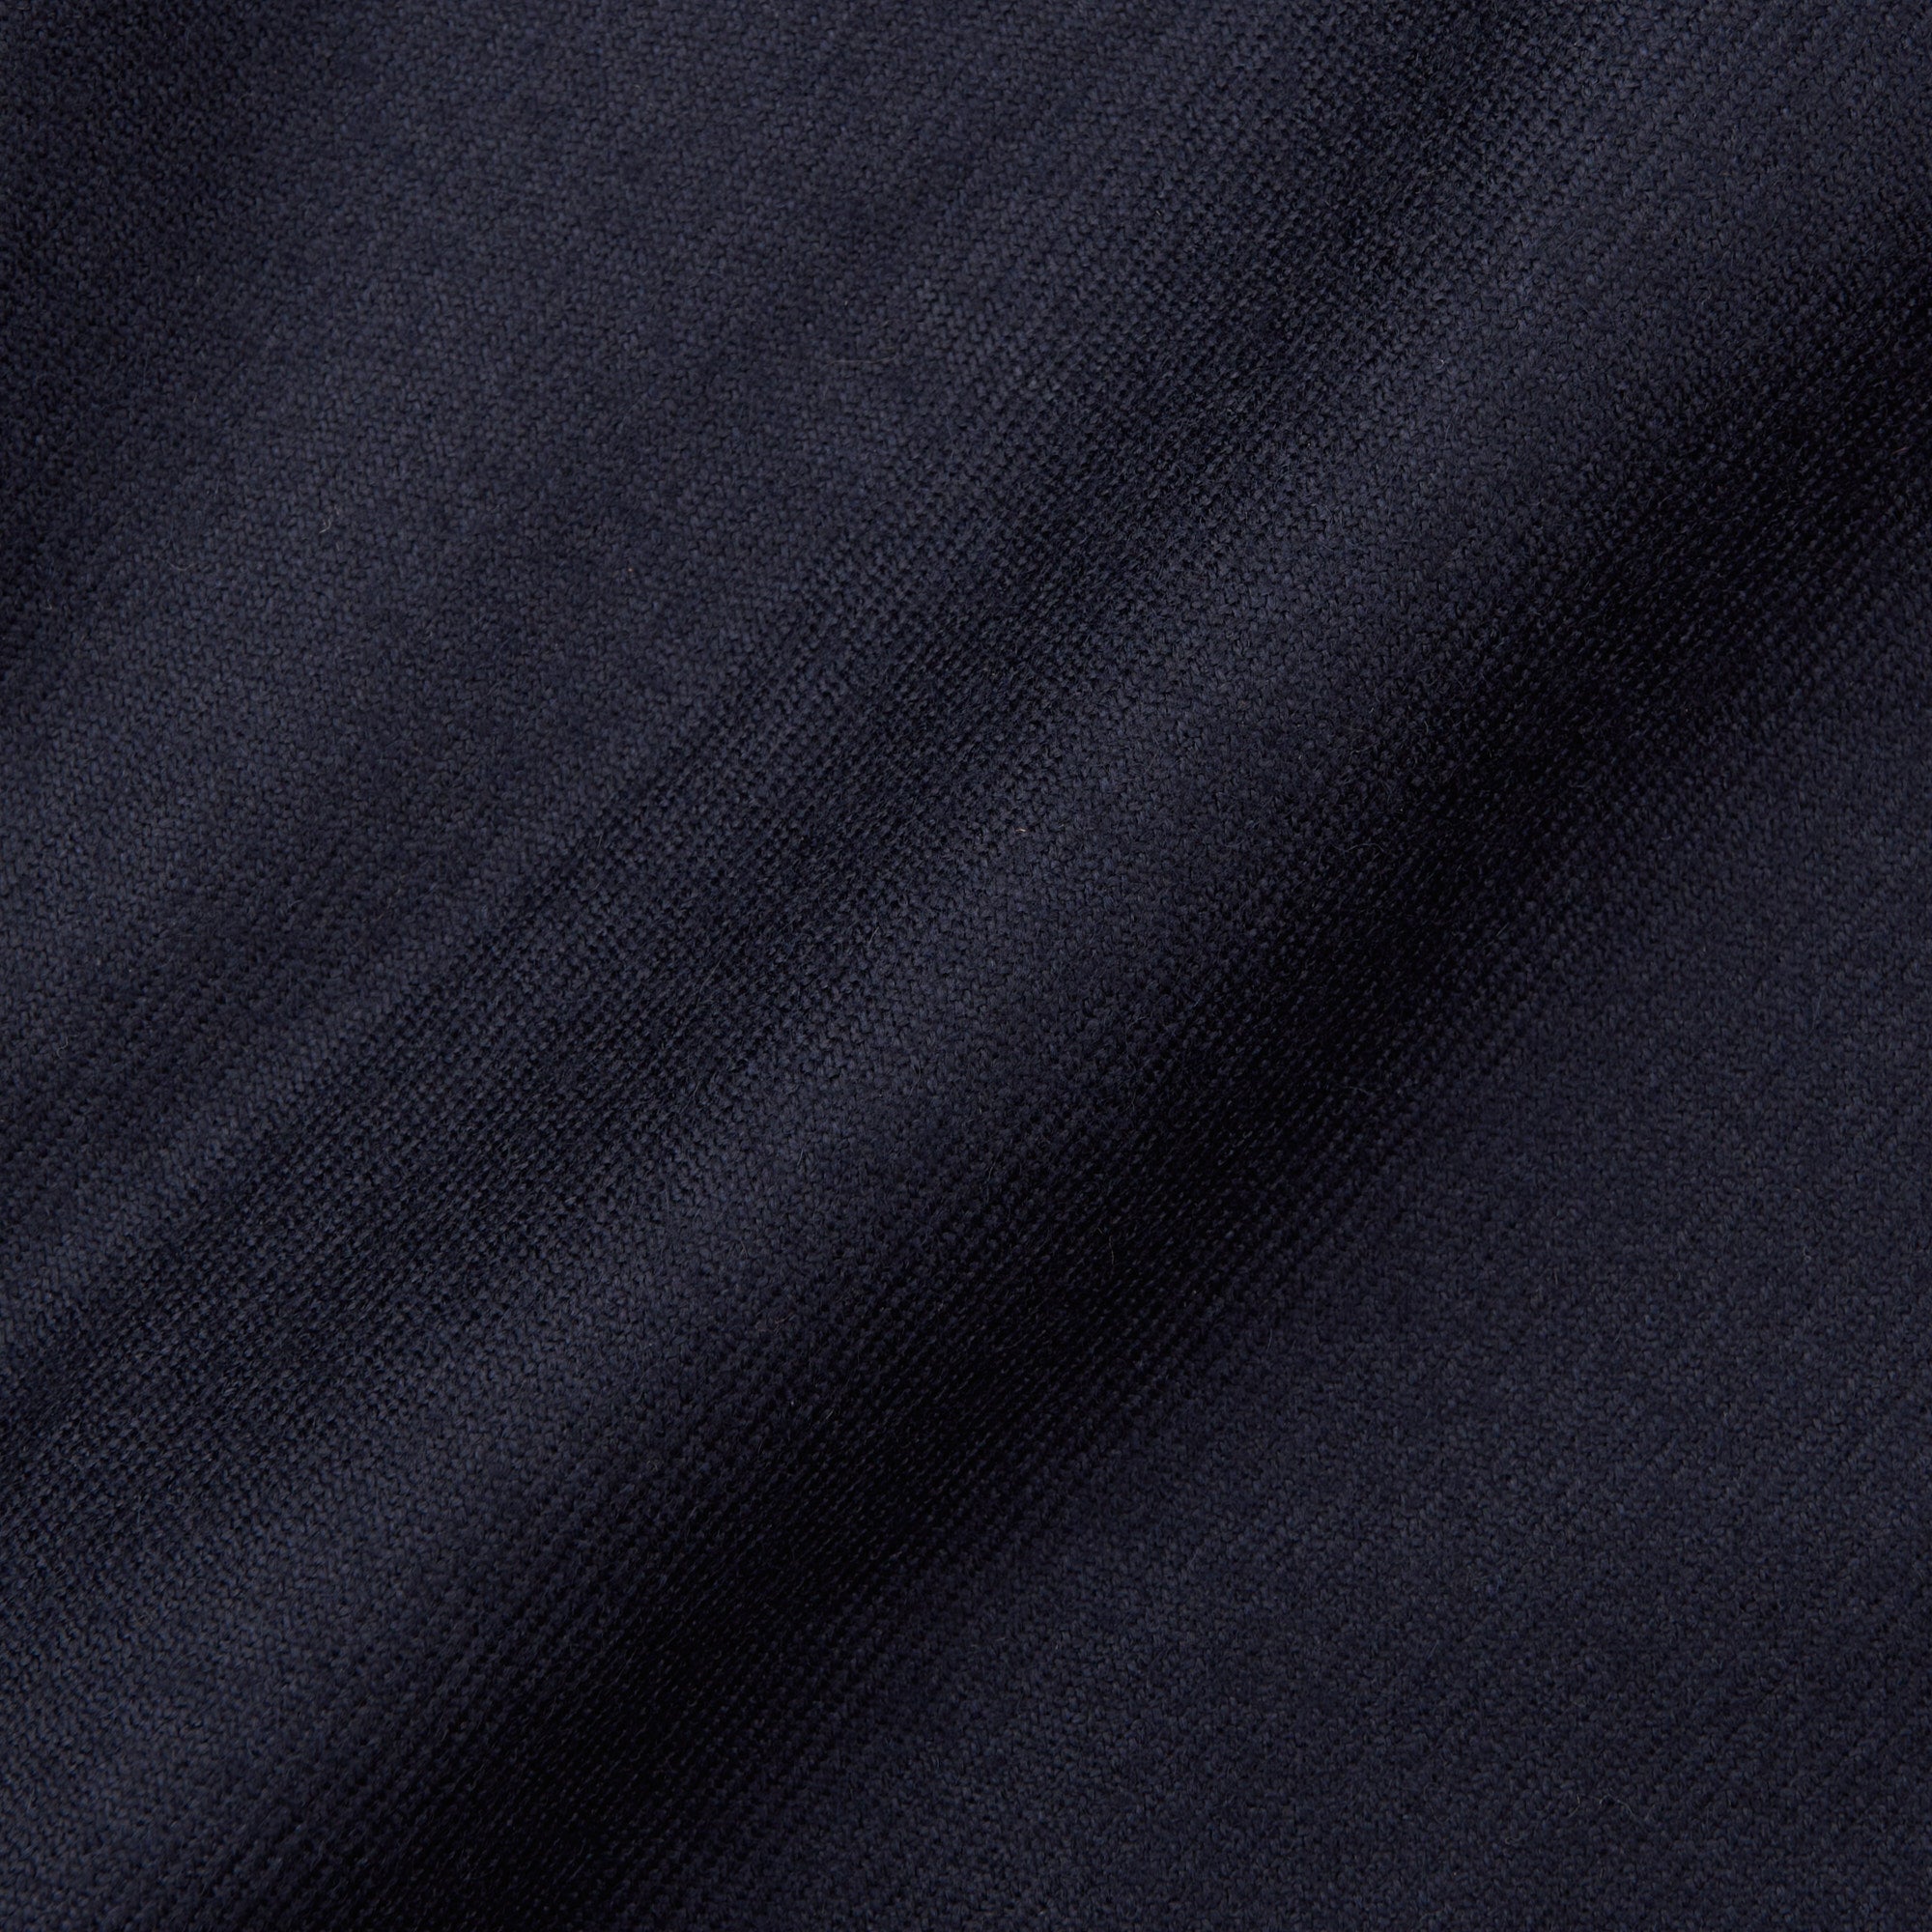 CESARE ATTOLINI Napoli Handmade Midnight Blue Cashmere Jacket EU 50 US 40 CESARE ATTOLINI